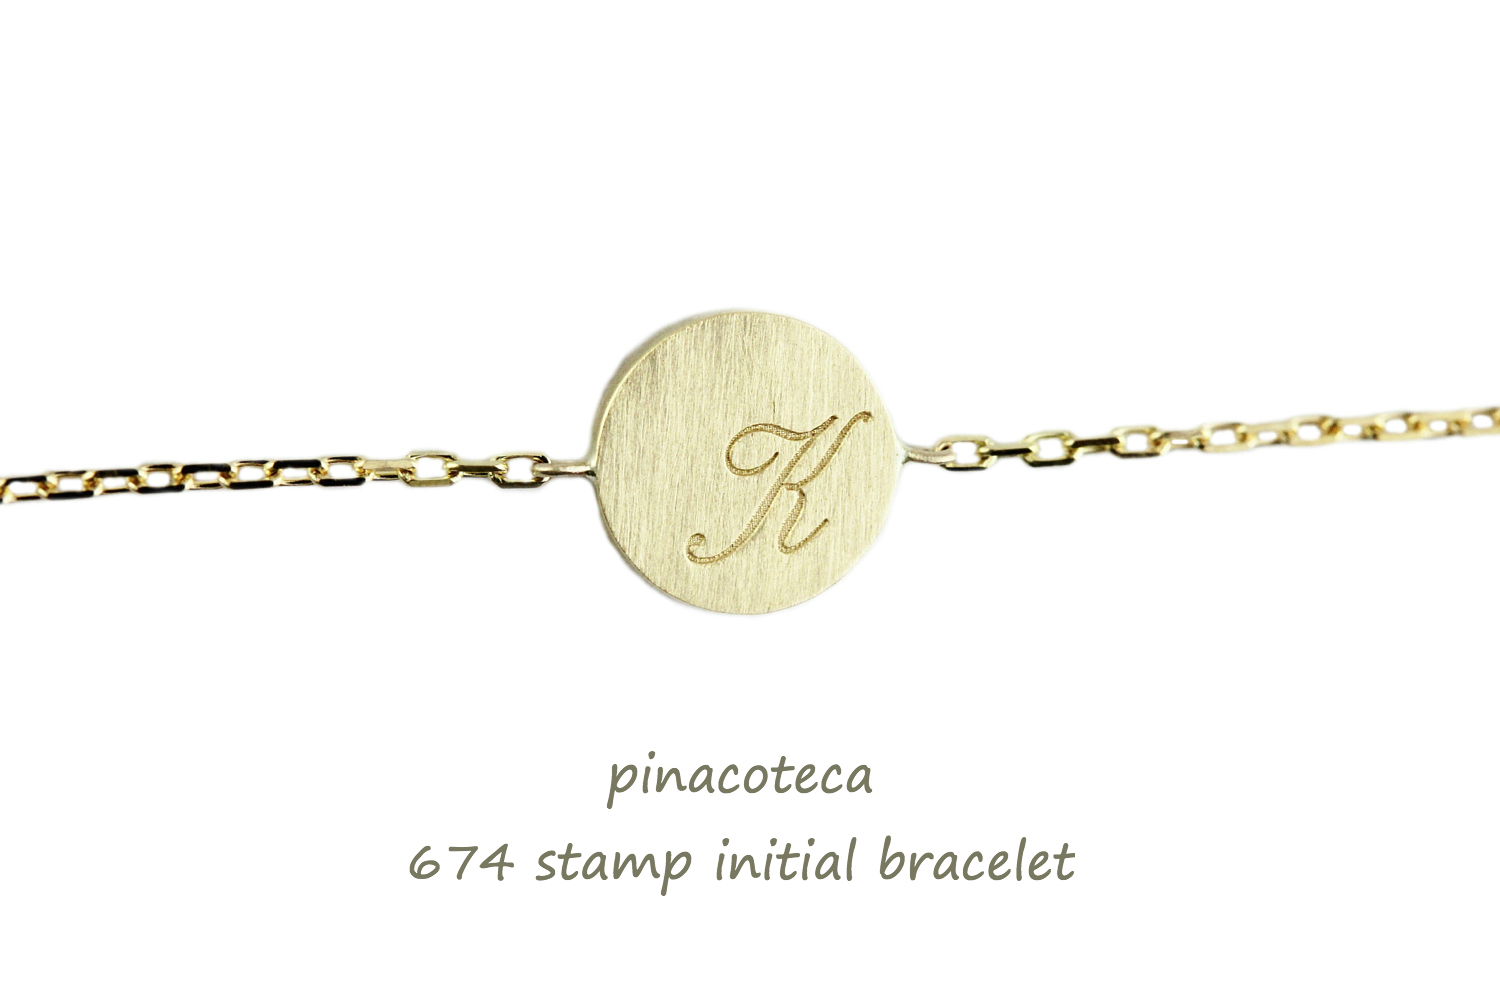 ピナコテーカ 674 スタンプ イニシャル ナンバー 数字 華奢ブレスレット 18金,pinacoteca Stamp Initial Number Bracelet K18